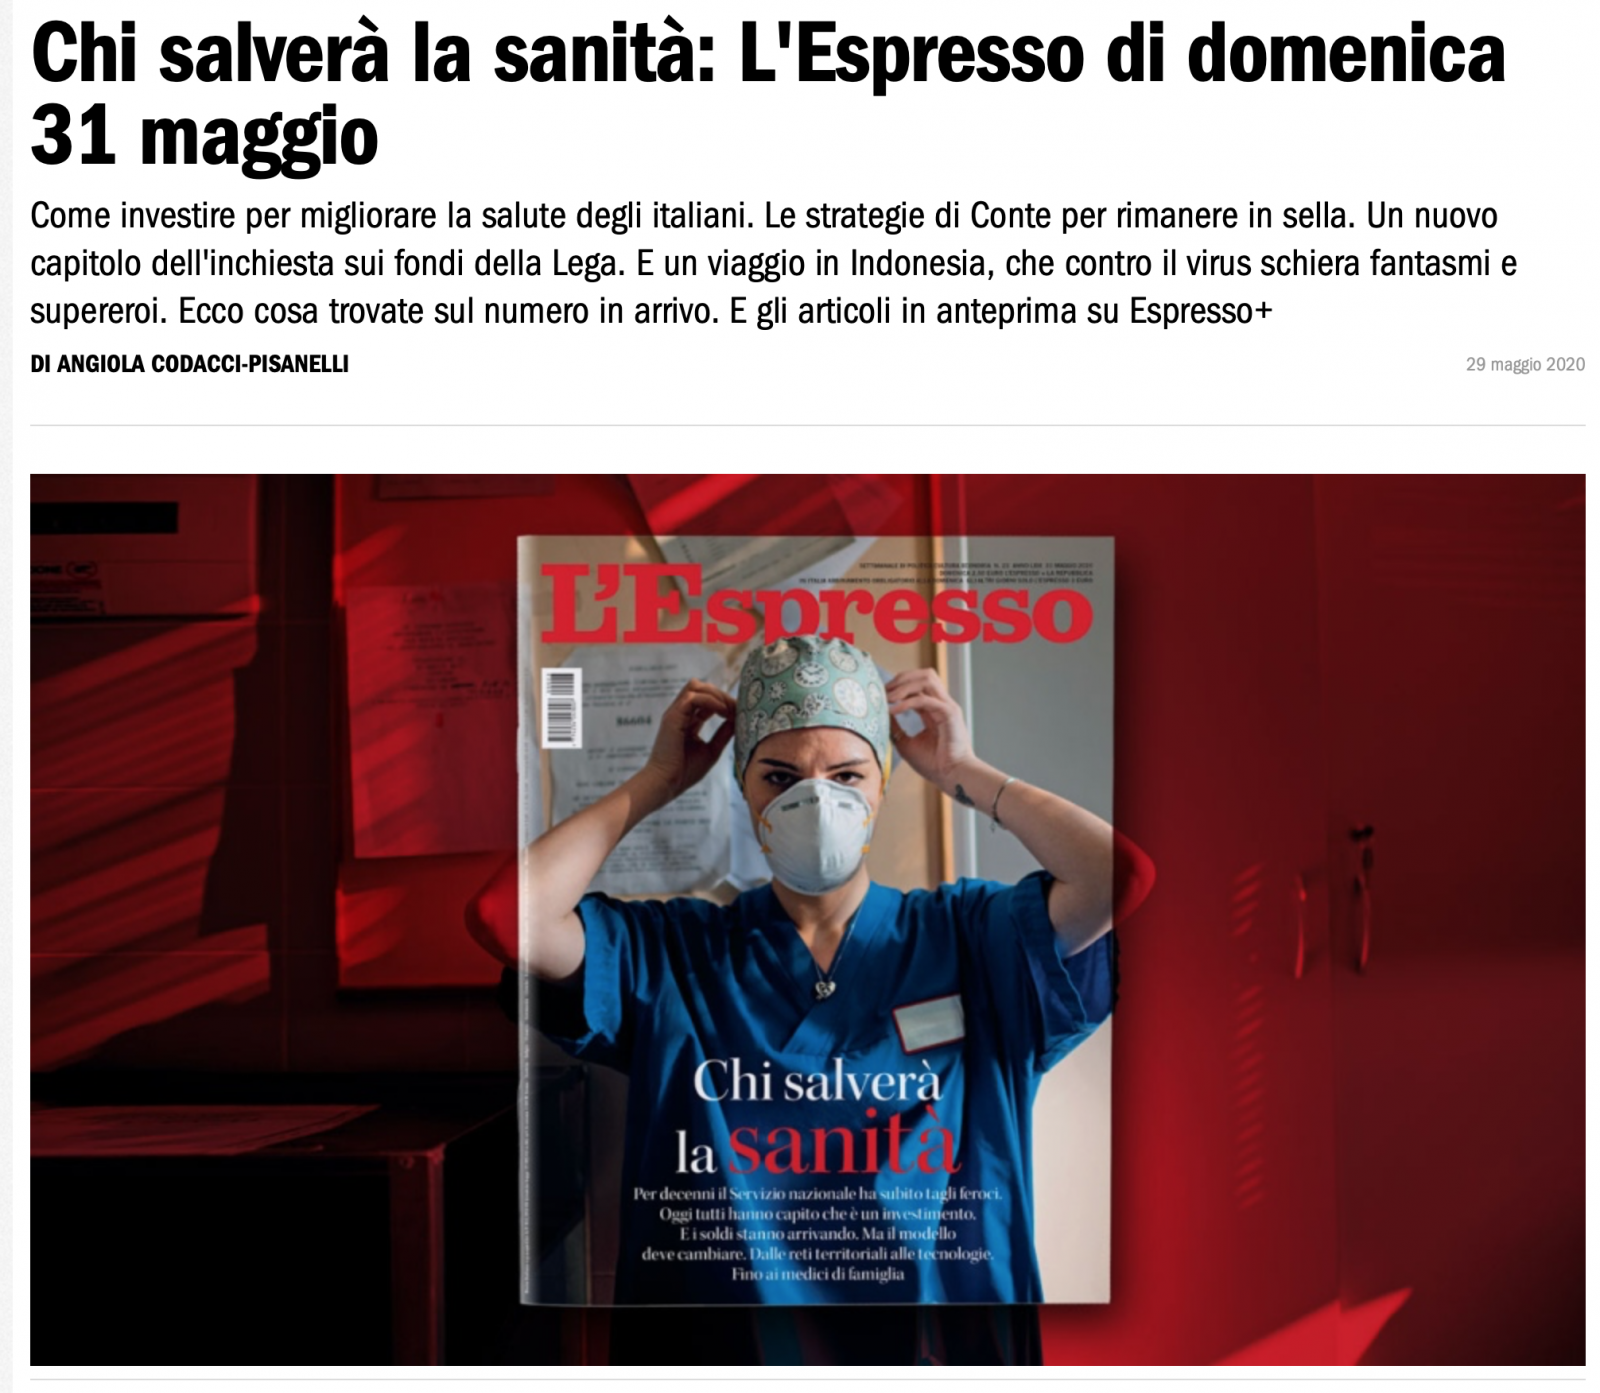 Today Cover of magazine L'ESPRESSO 